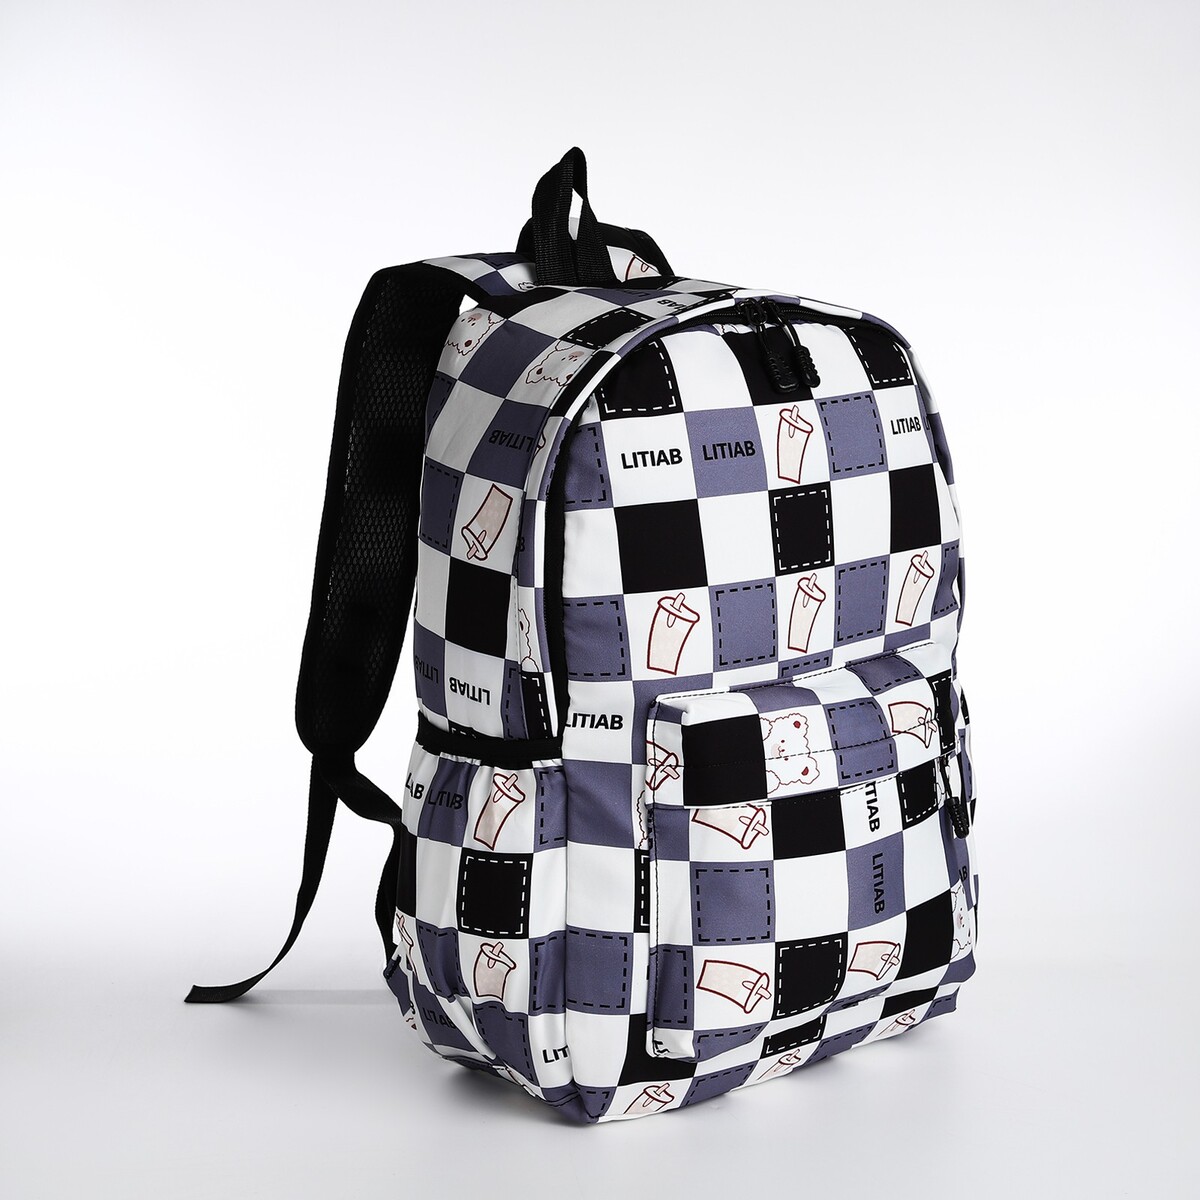 Рюкзак молодежный из текстиля, 3 кармана, цвет серый/черный